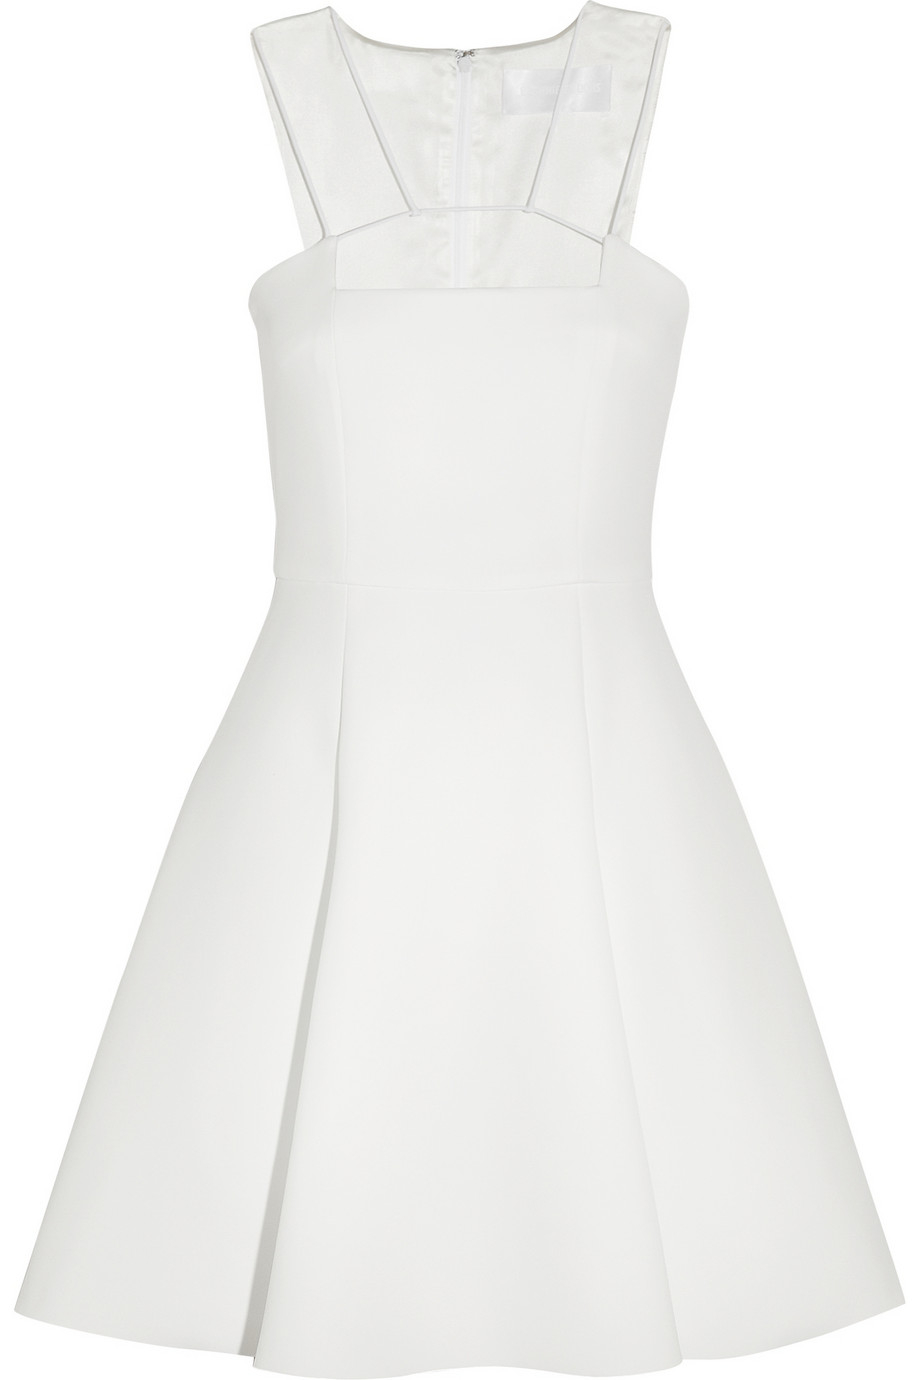 Lyst - Cushnie Et Ochs Neoprene Dress in White